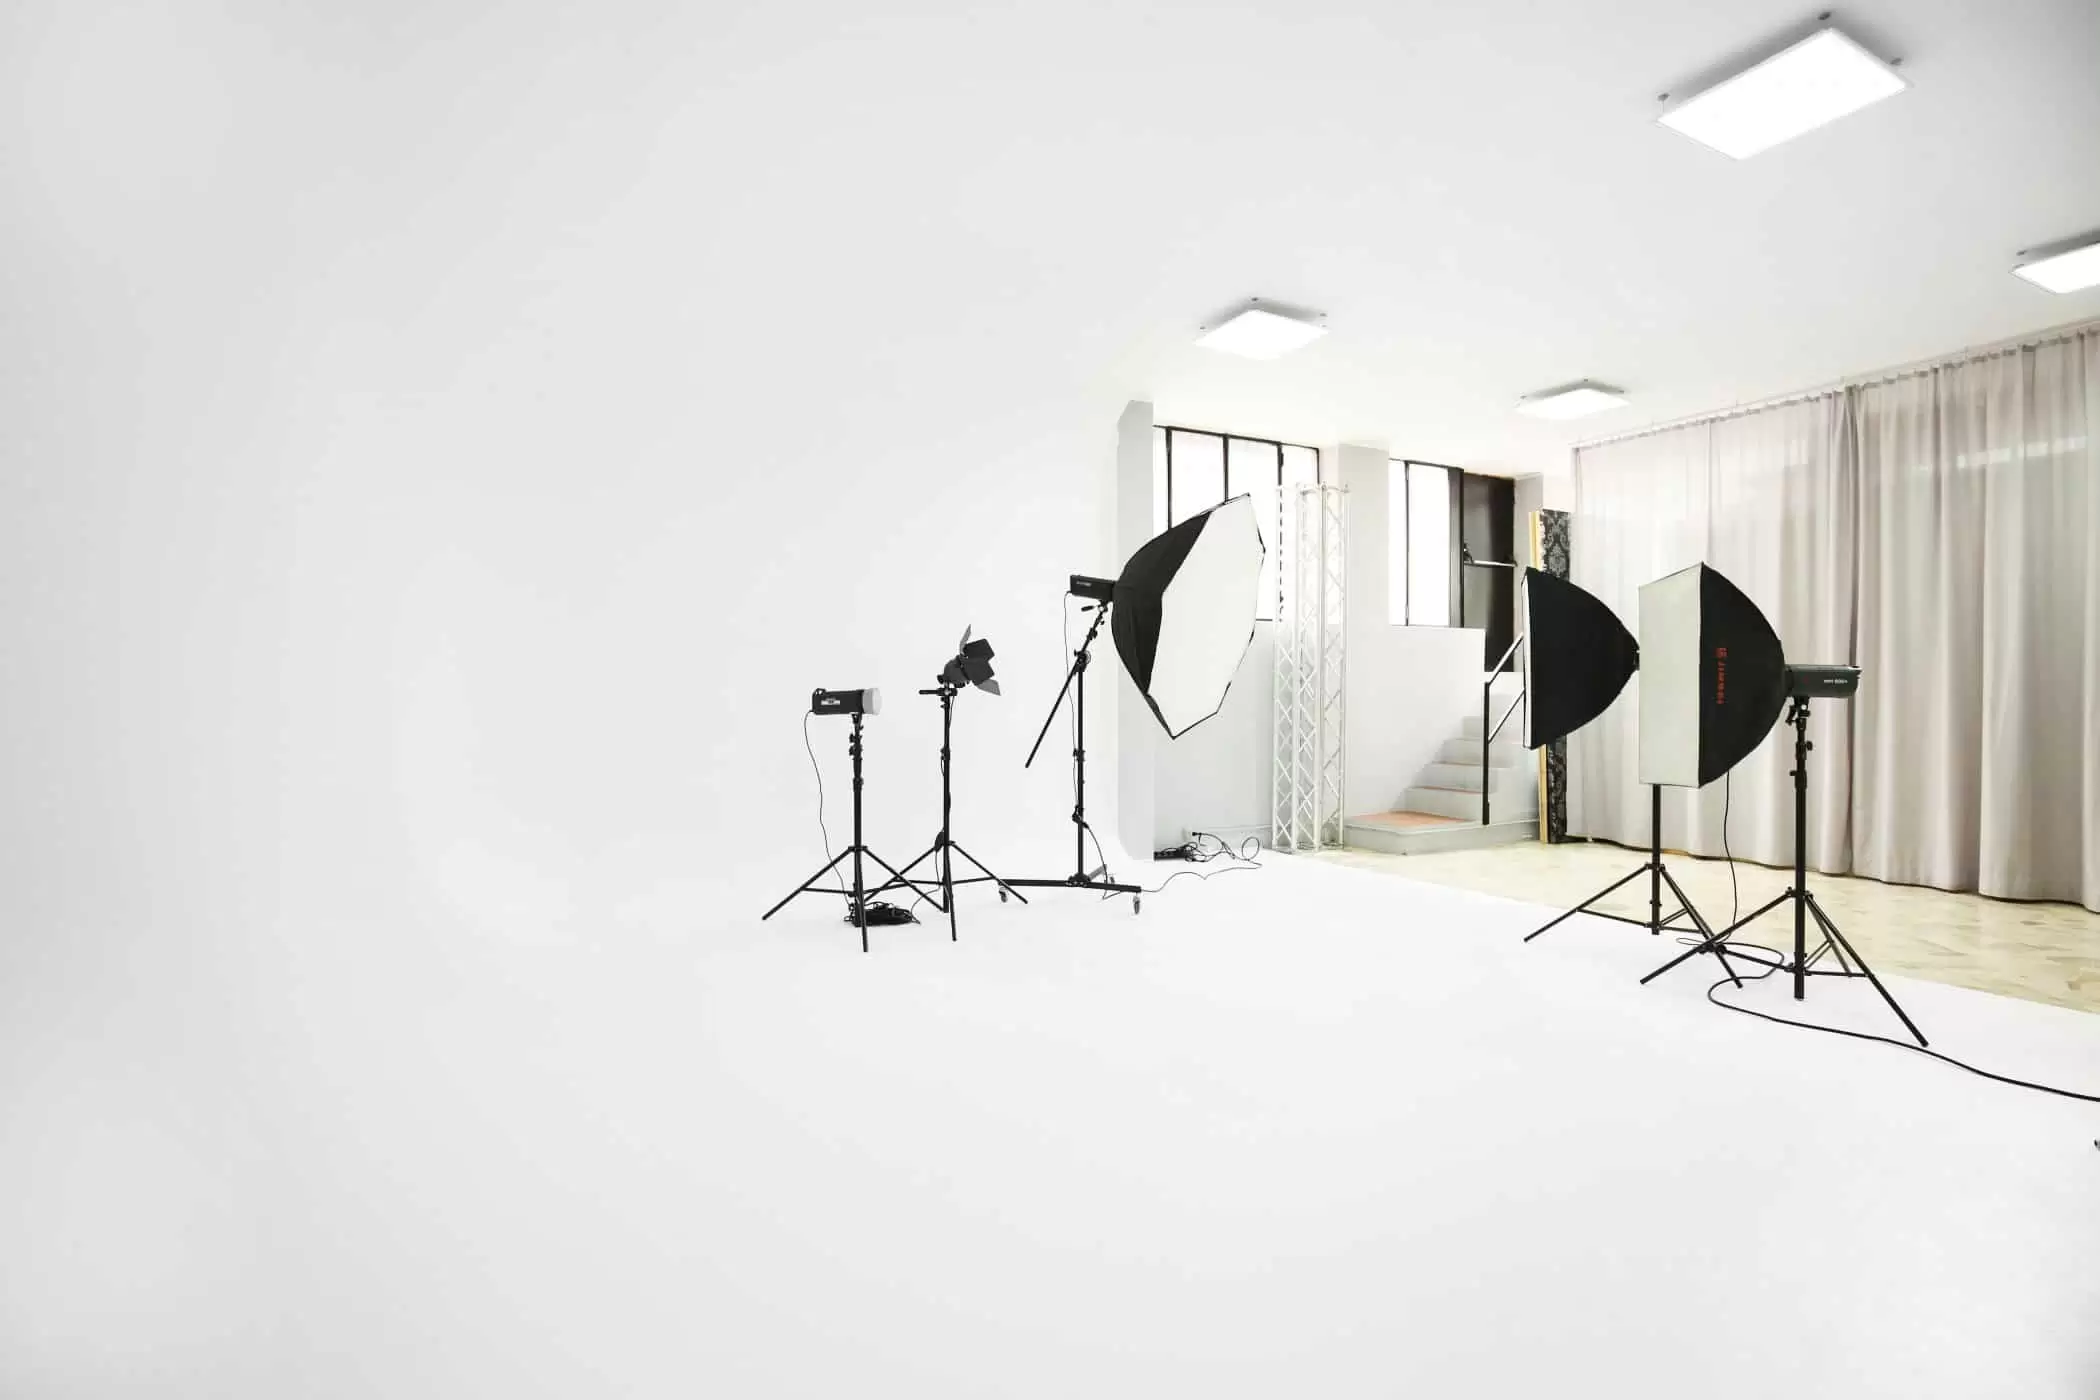 affitto-studio-fotografico-sala-pose-postazione-makeup-luci-per-servizi-fotografici-video-riprese